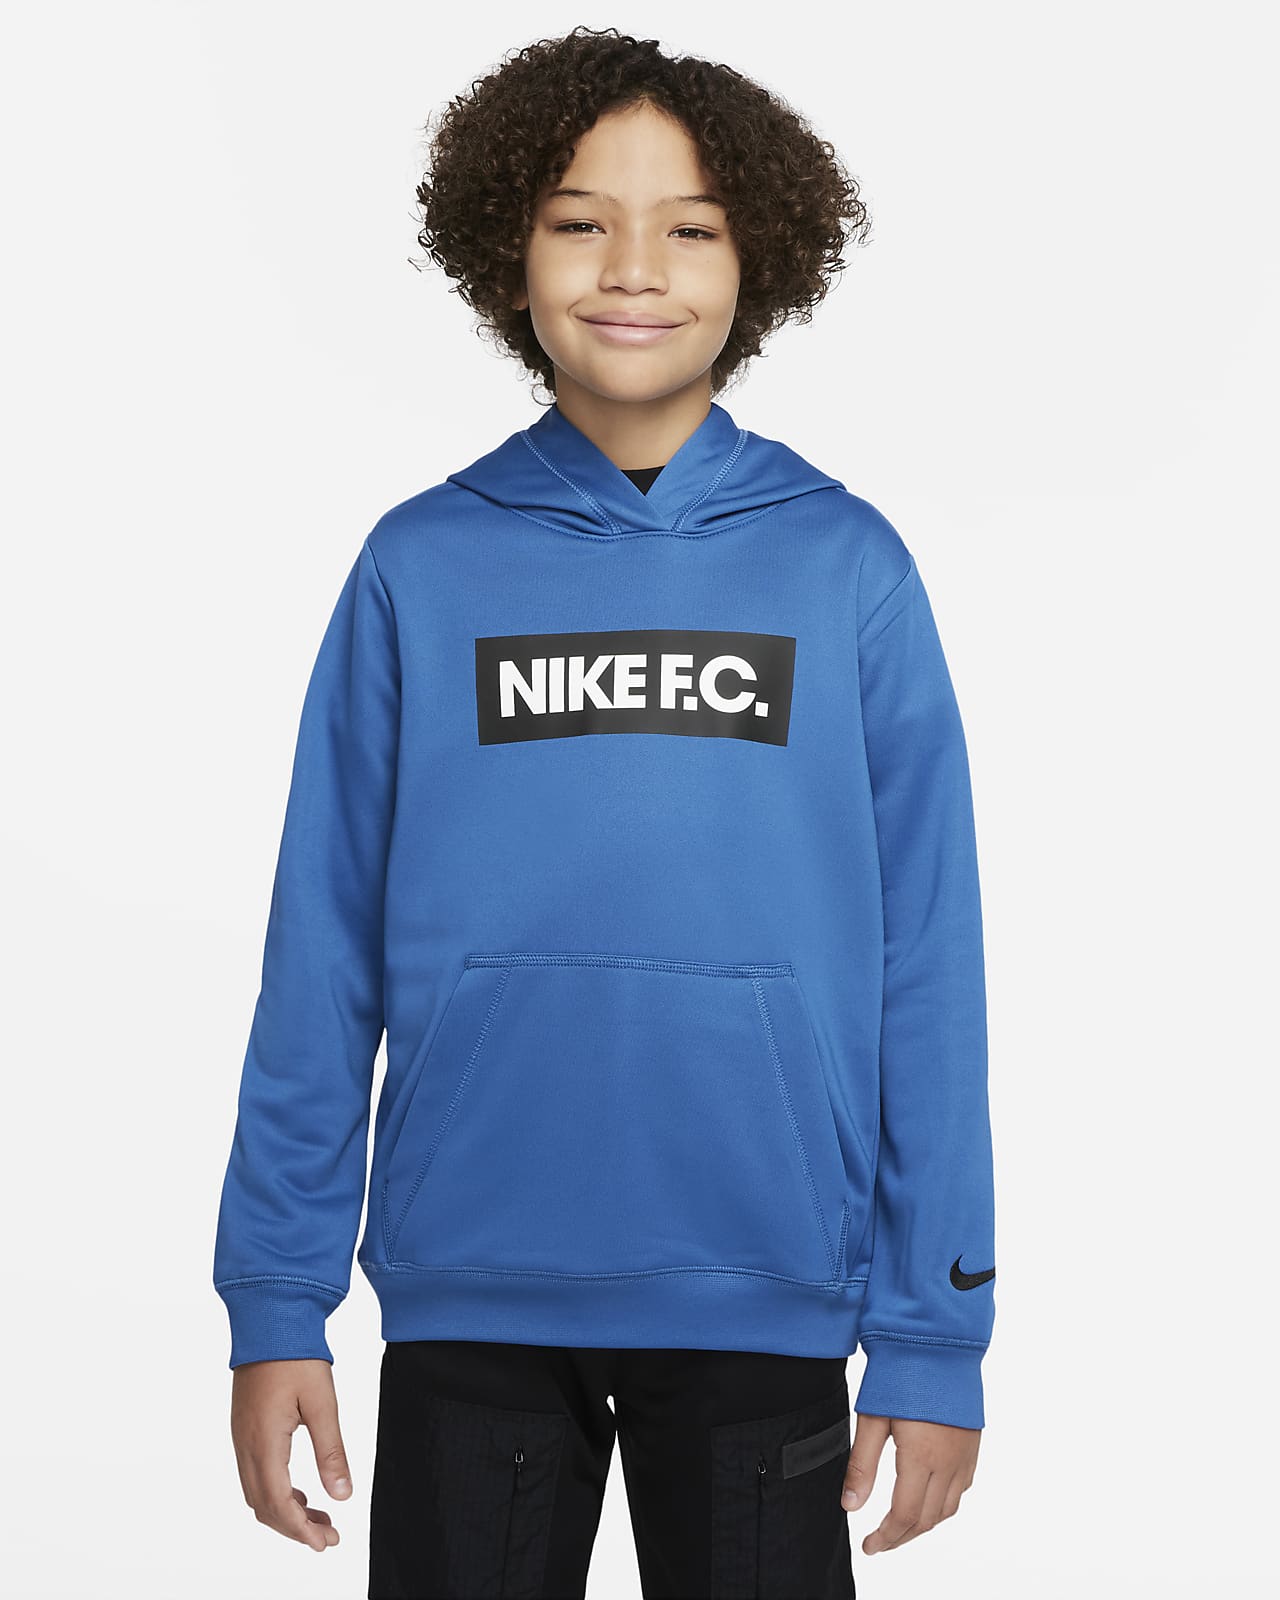 Nike F.C. fotballhettegenser til store barn